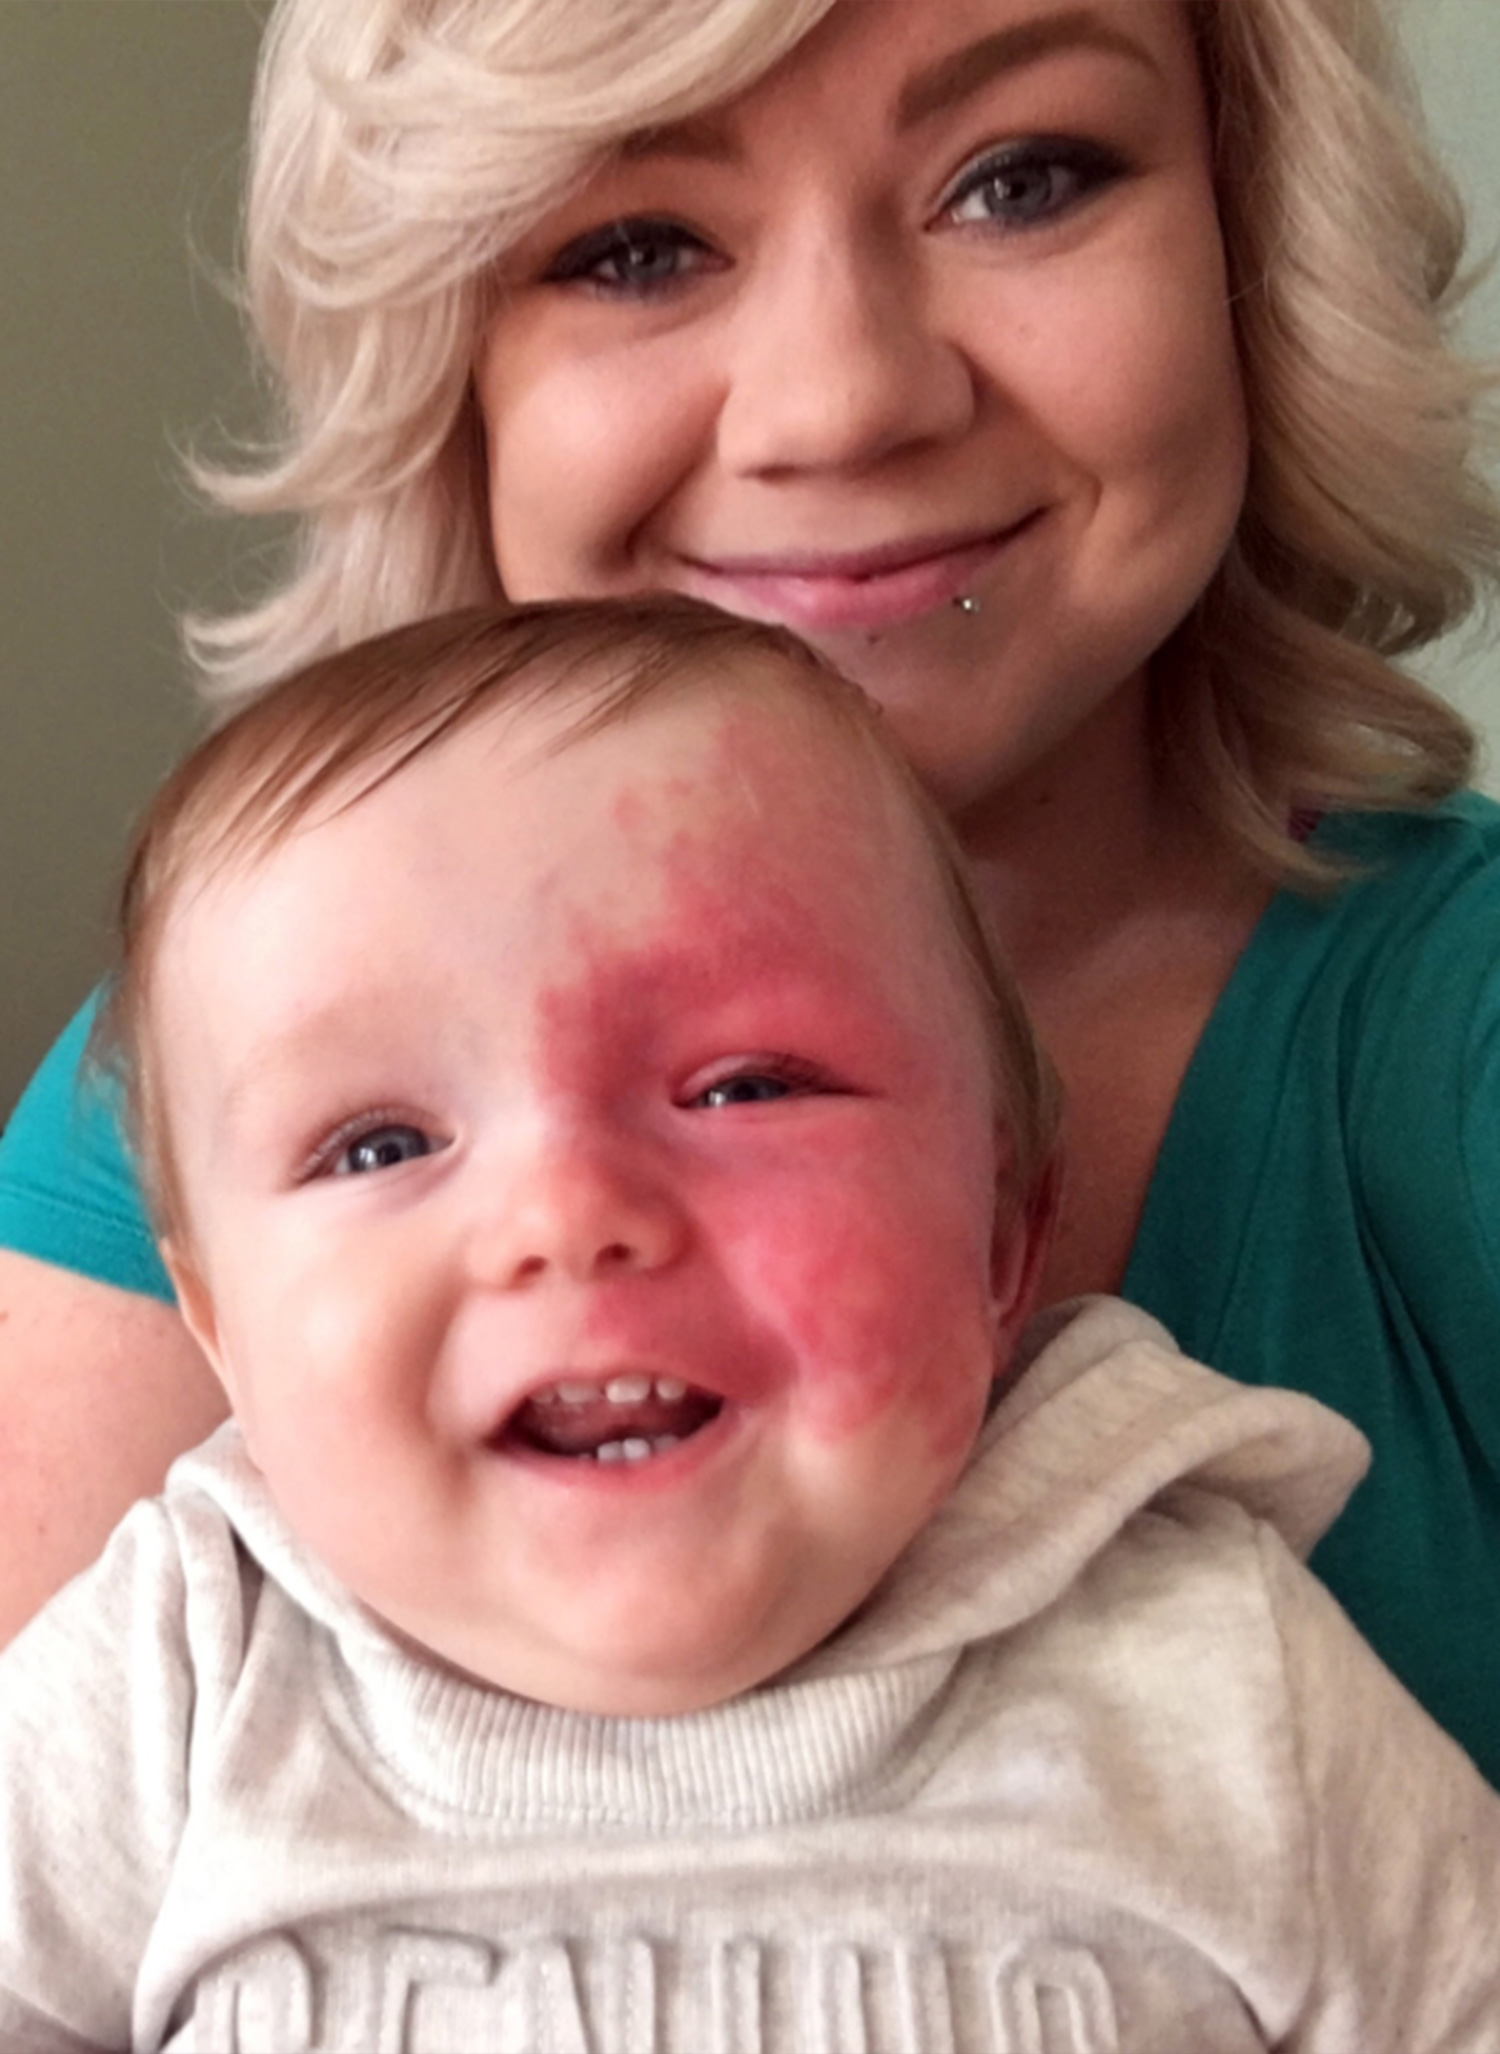 Nem engedi eltávolítani kisfia arcáról a hatalmas születési foltot az anyuka - fotók